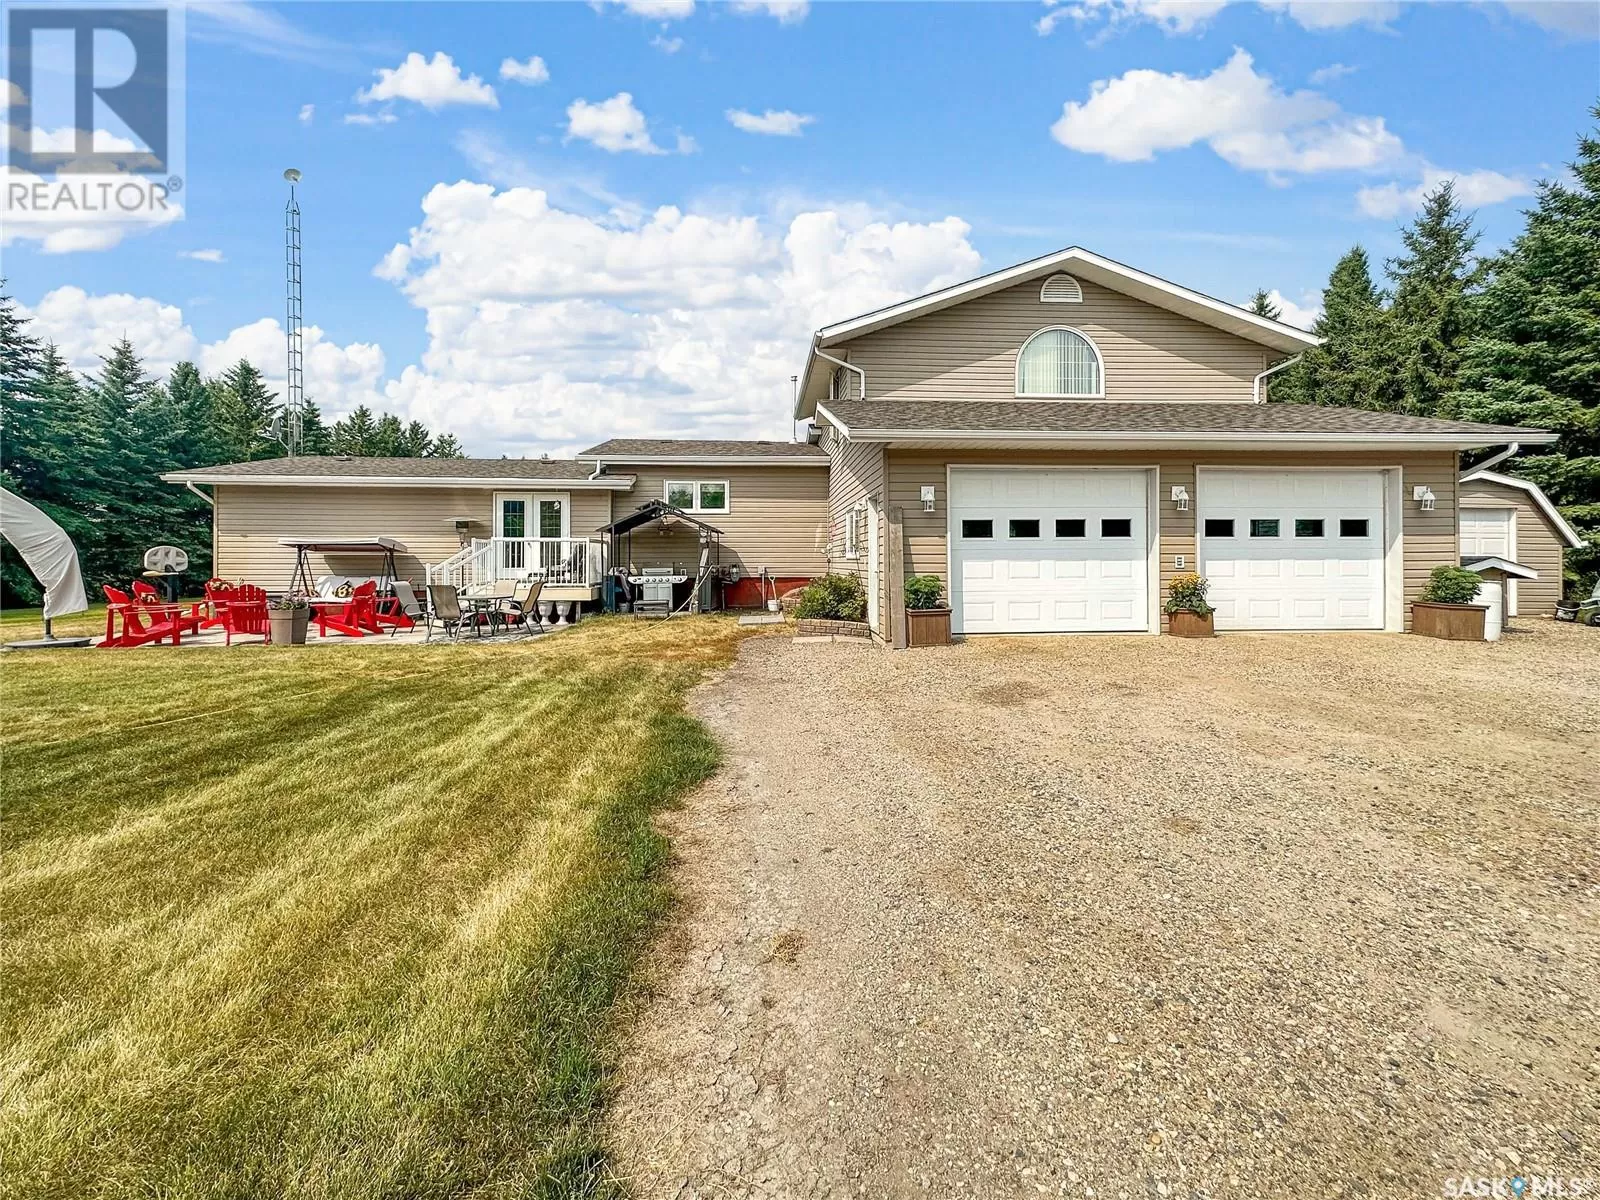 House for rent: 139 Acre Acreage, Rocanville Rm No. 151, Saskatchewan S0A 3L0